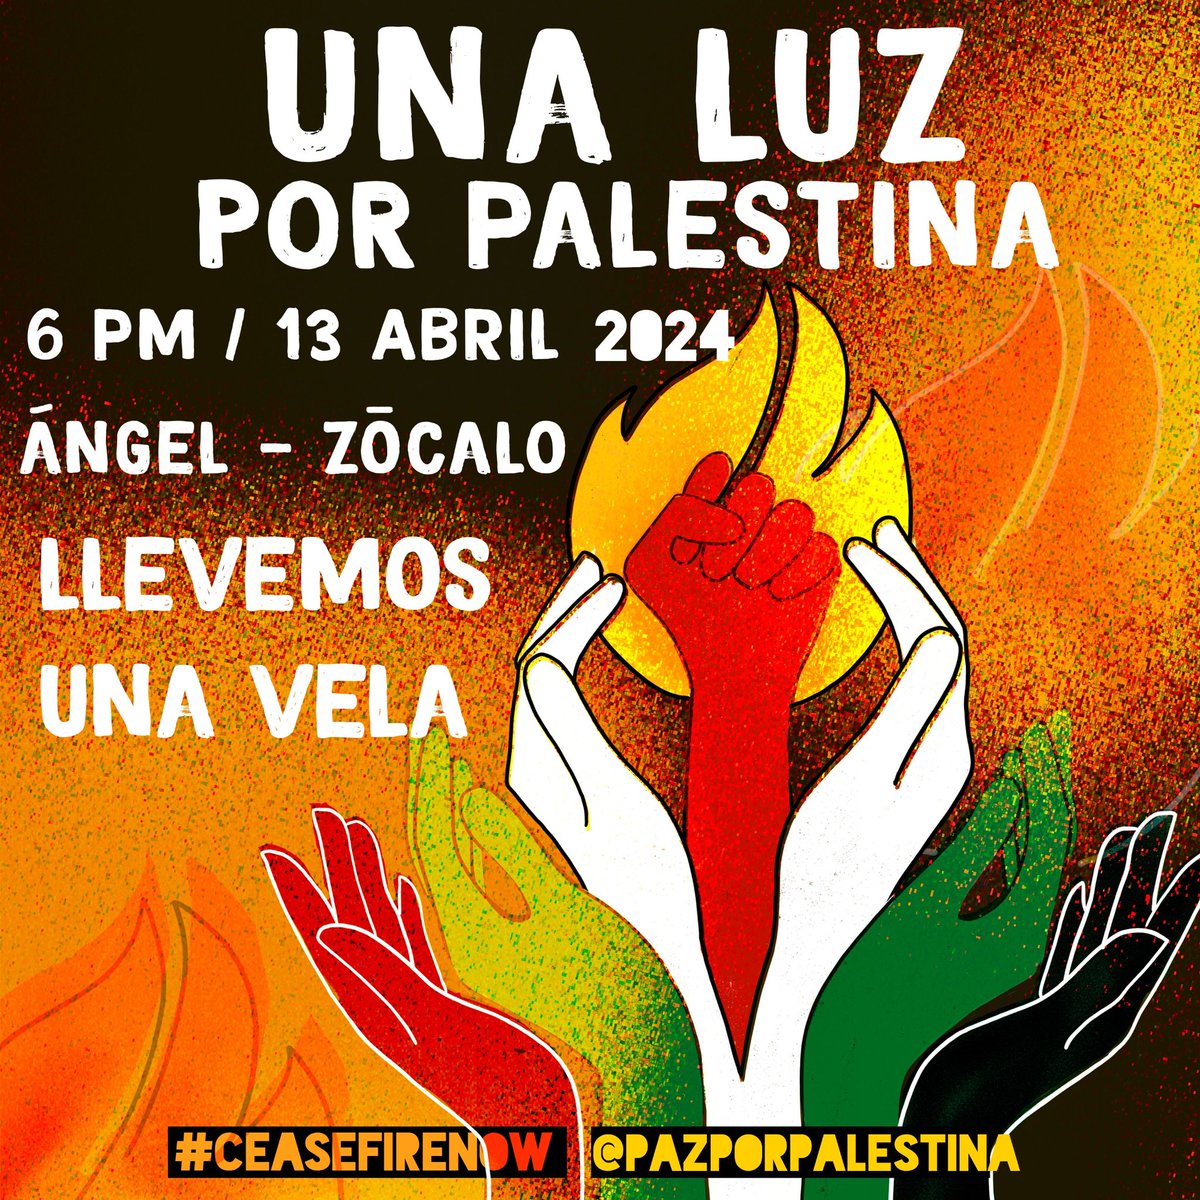 Próxima movilización en solidaridad con el pueblo palestino y en contra del genocidio #UnaLuzporPalestina Les invitamos a que lleven sus velas🕯️ para alumbrar nuestra esperanza exigiendo el fin del genocidio y el #CeseAlFuegoYA 🇵🇸 🍉